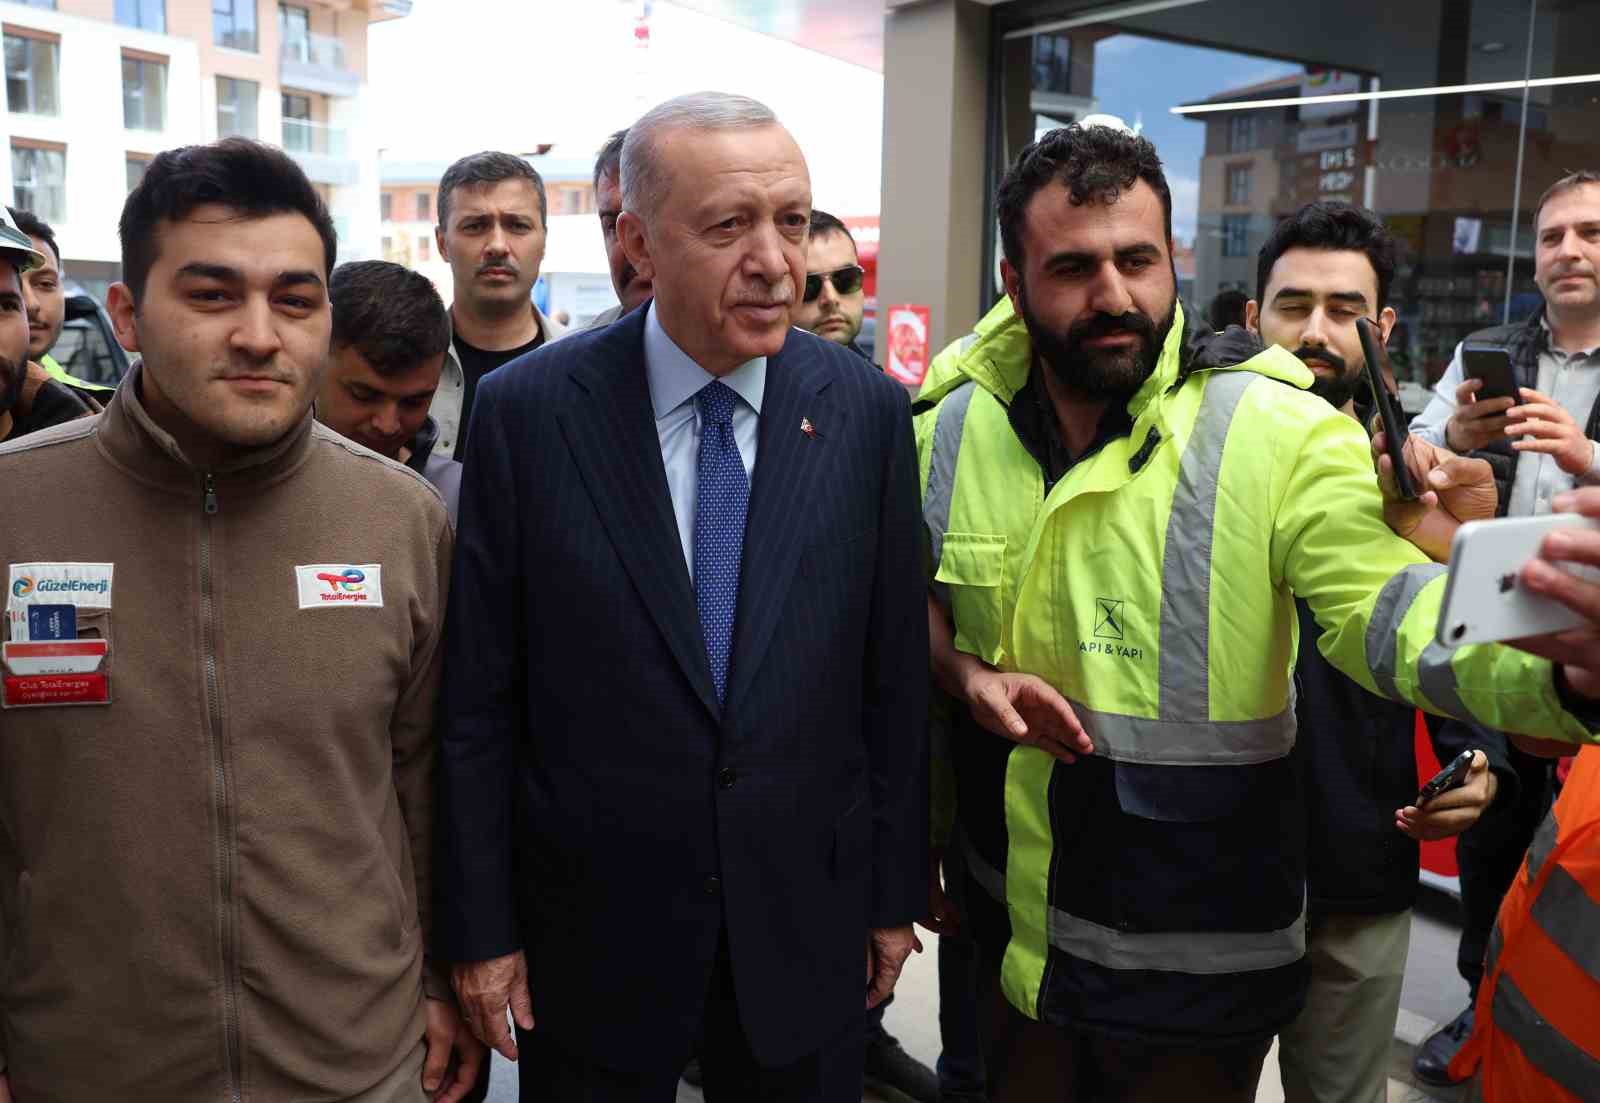 cumhurbaskani erdogan uskudarda akaryakit istasyonuna ugradi vatandasla sohbet etti 0 l2EFH6Yc